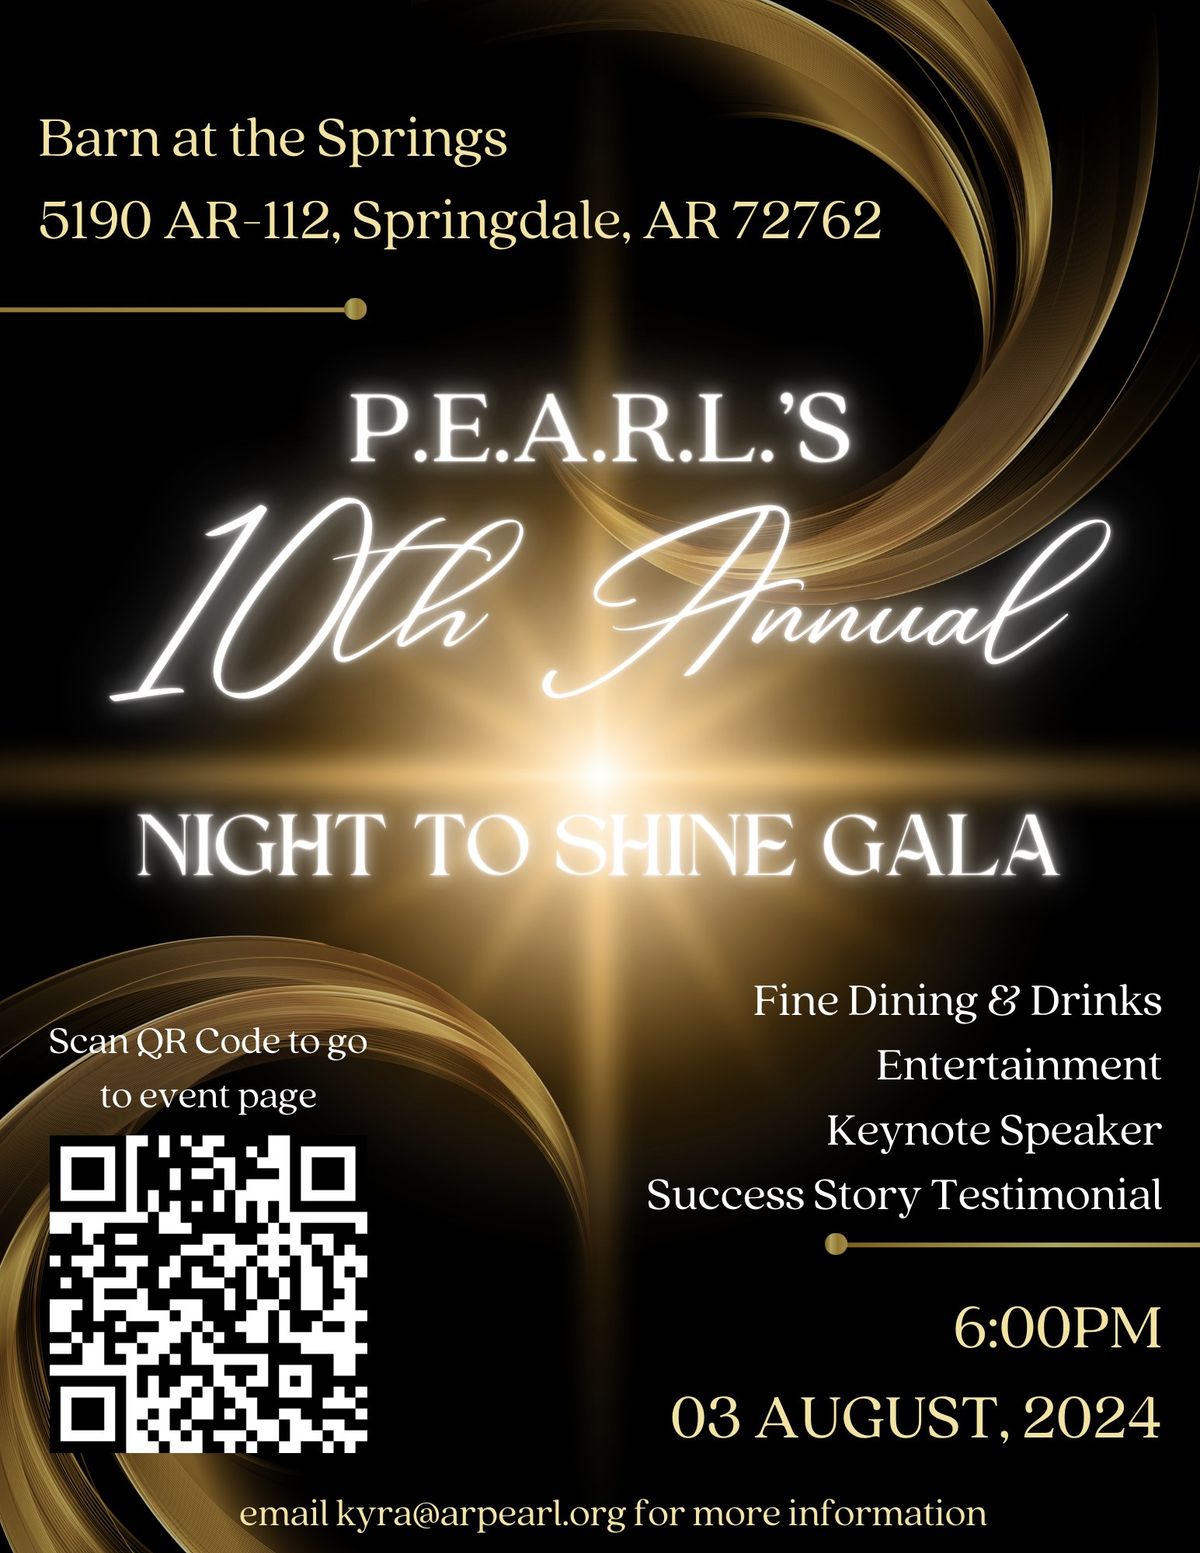 P.E.A.R.L.'s 10th Annual Night to Shine Gala